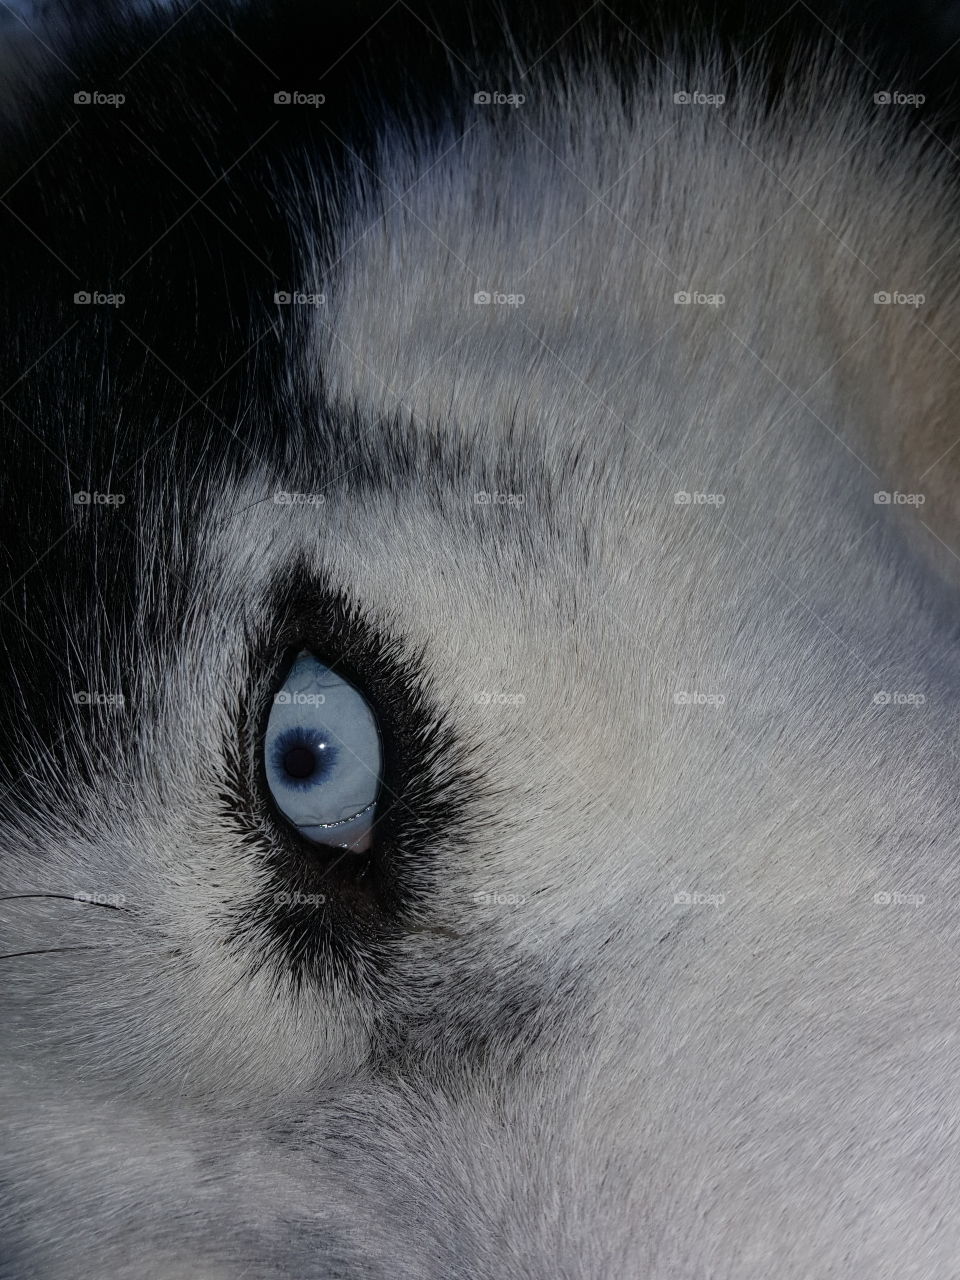 ice eye hasky dog